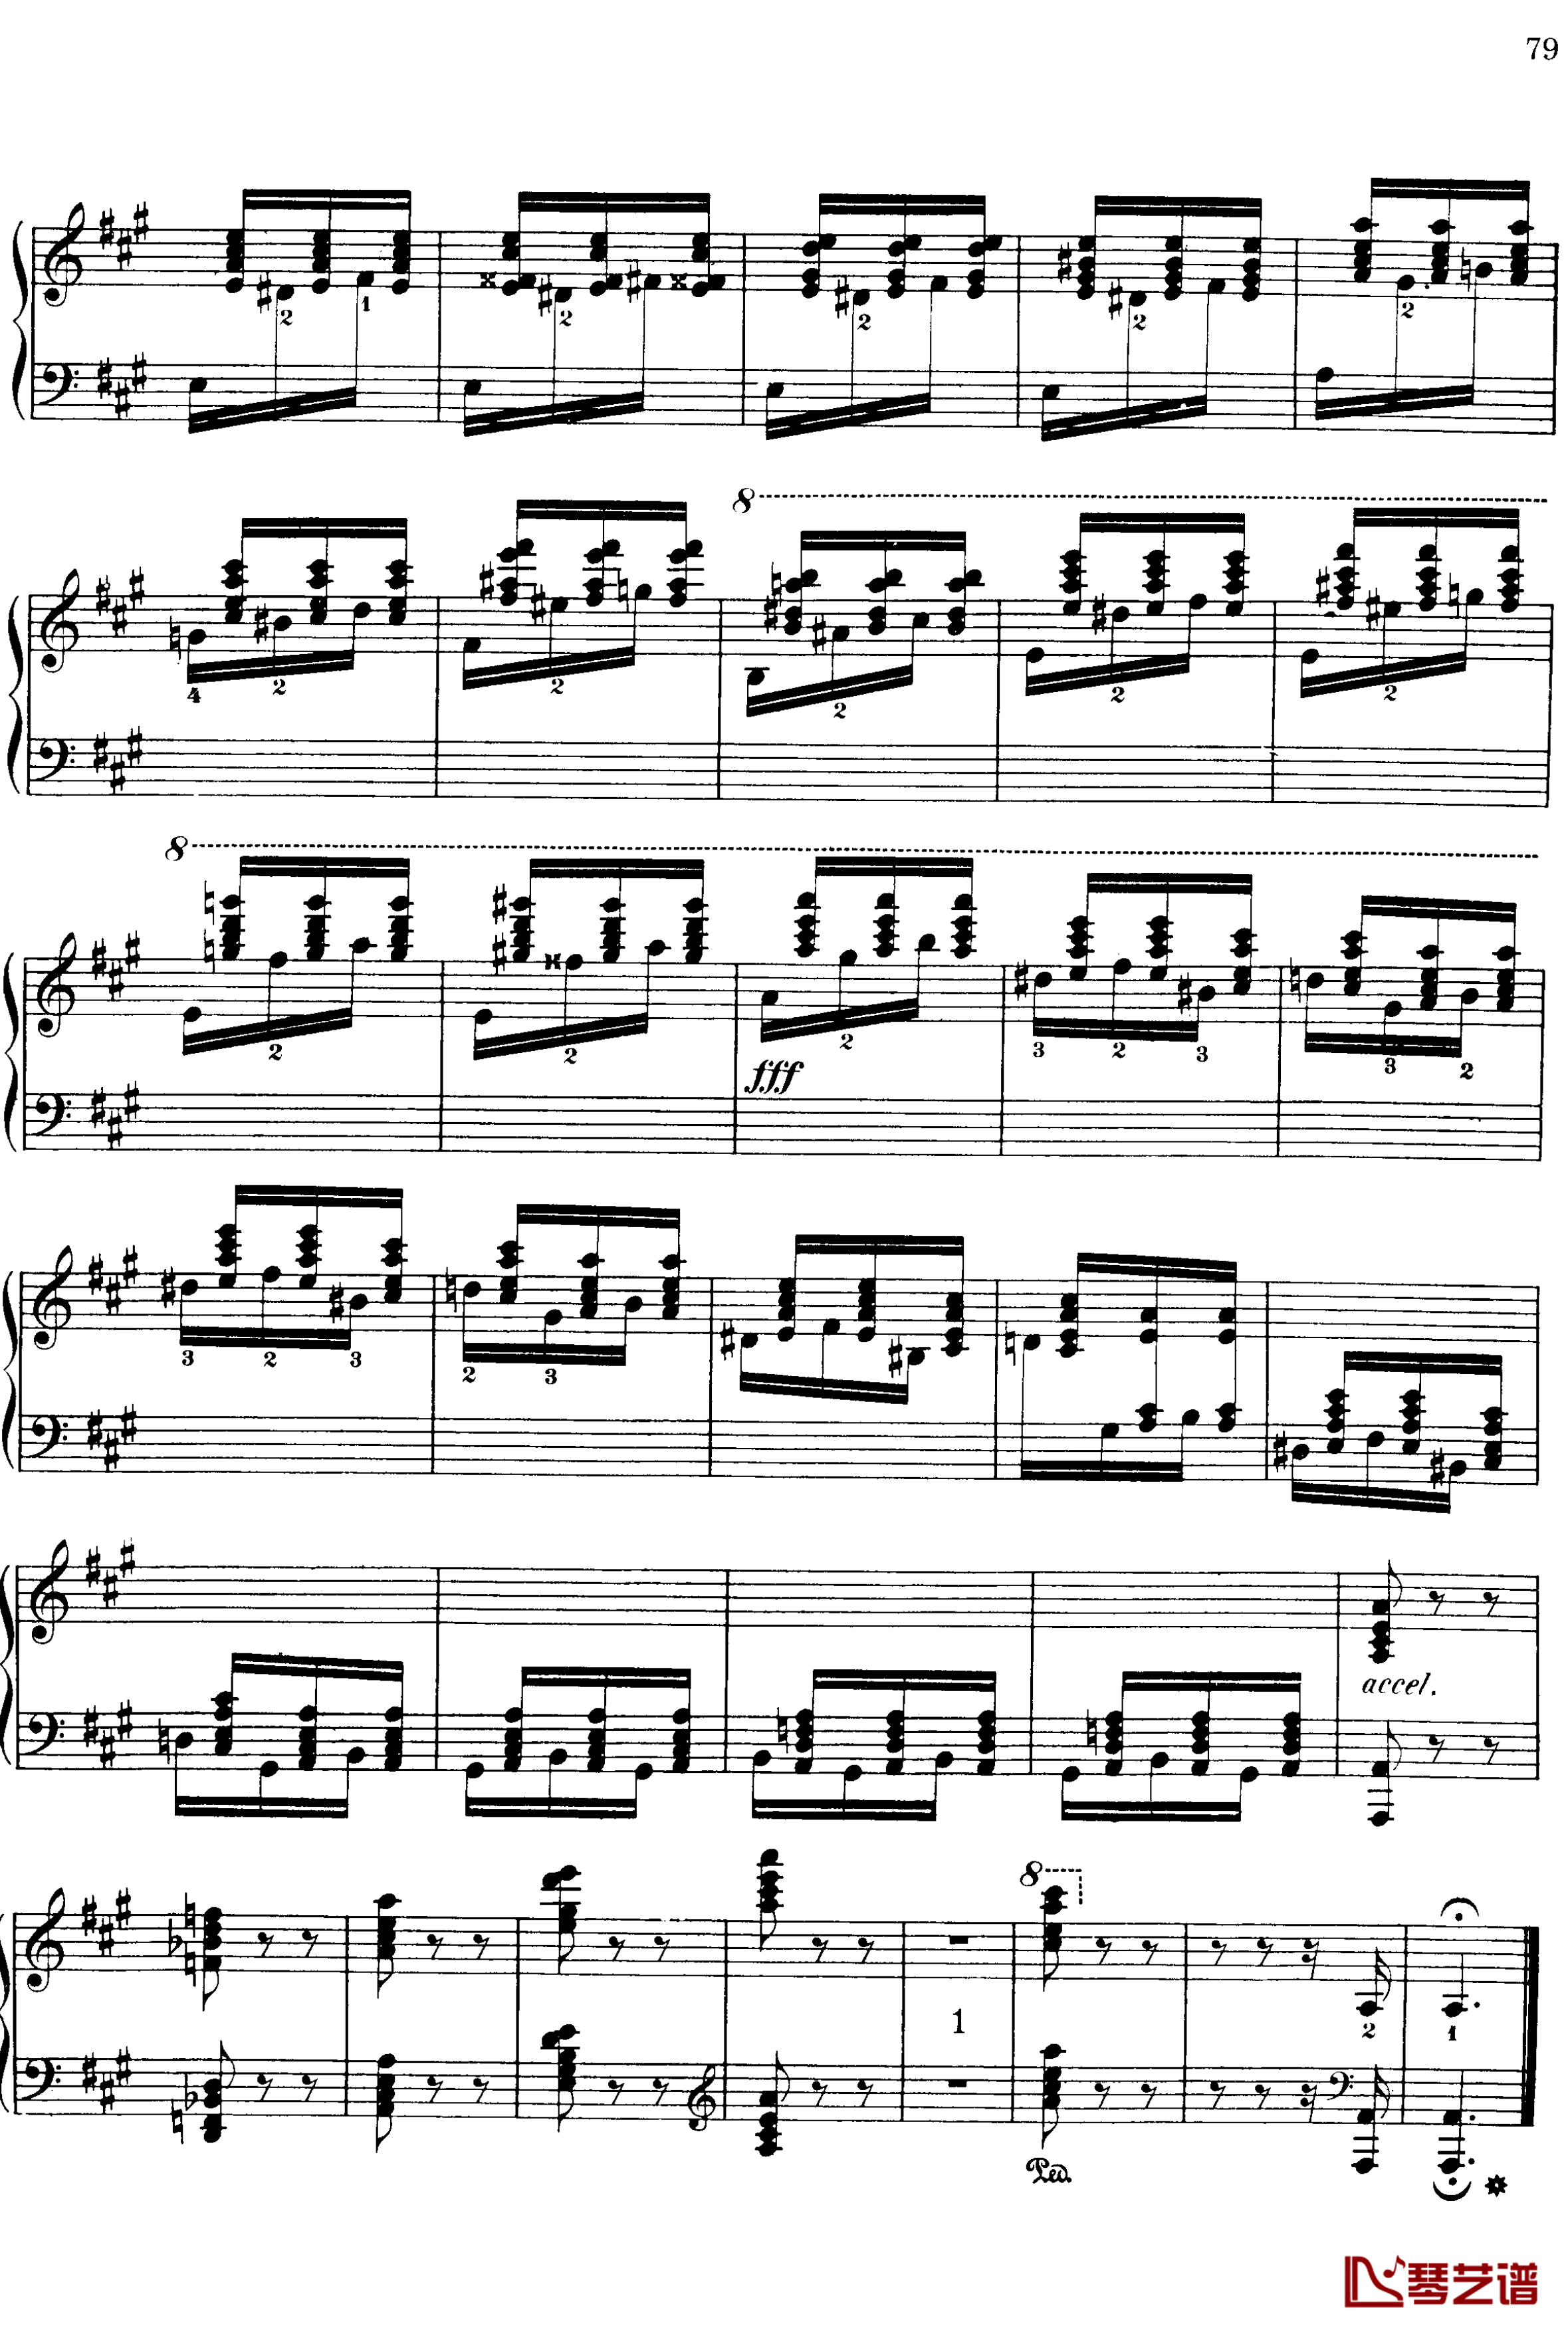 西班牙随想曲 Op.37钢琴谱-莫什科夫斯基-Moszkowski14